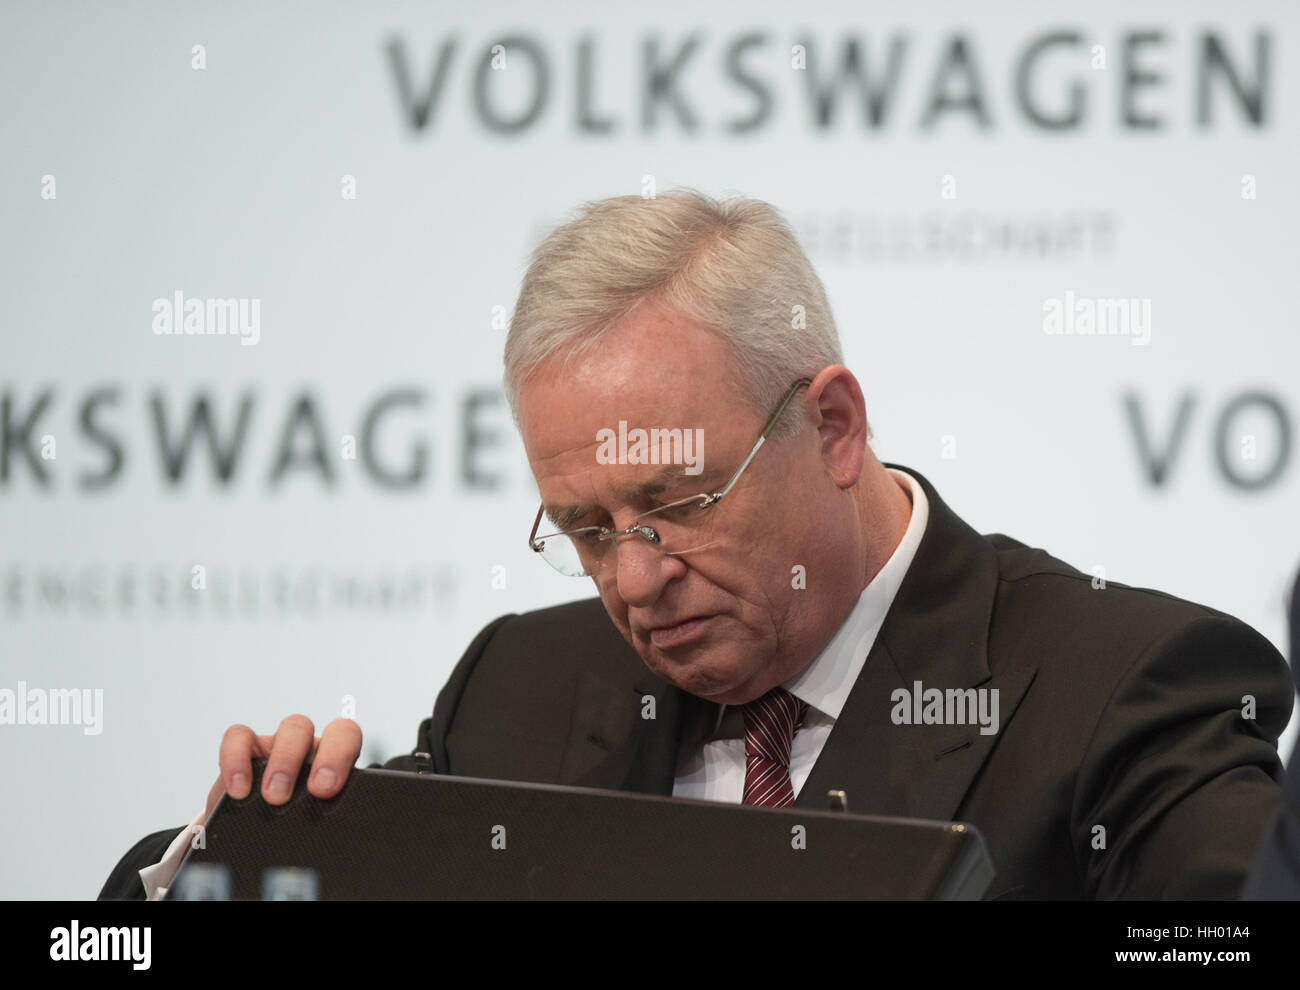 ARCHIV - Martin Winterkorn, der damalige Vorstandsvorsitzende der Volkswagen AG, schaut am 12.03.2015 in Berlin bei der Jahrespressekonferenz von VW in seinen Aktenoffer. (zu dpa 'Bericht: Neue Dokumente belasten Winterkorn in VW-Abgasskandal' am 14.01.2017) Foto: Jochen Lübke/dpa    (c) dpa - Bildfunk    Stock Photo